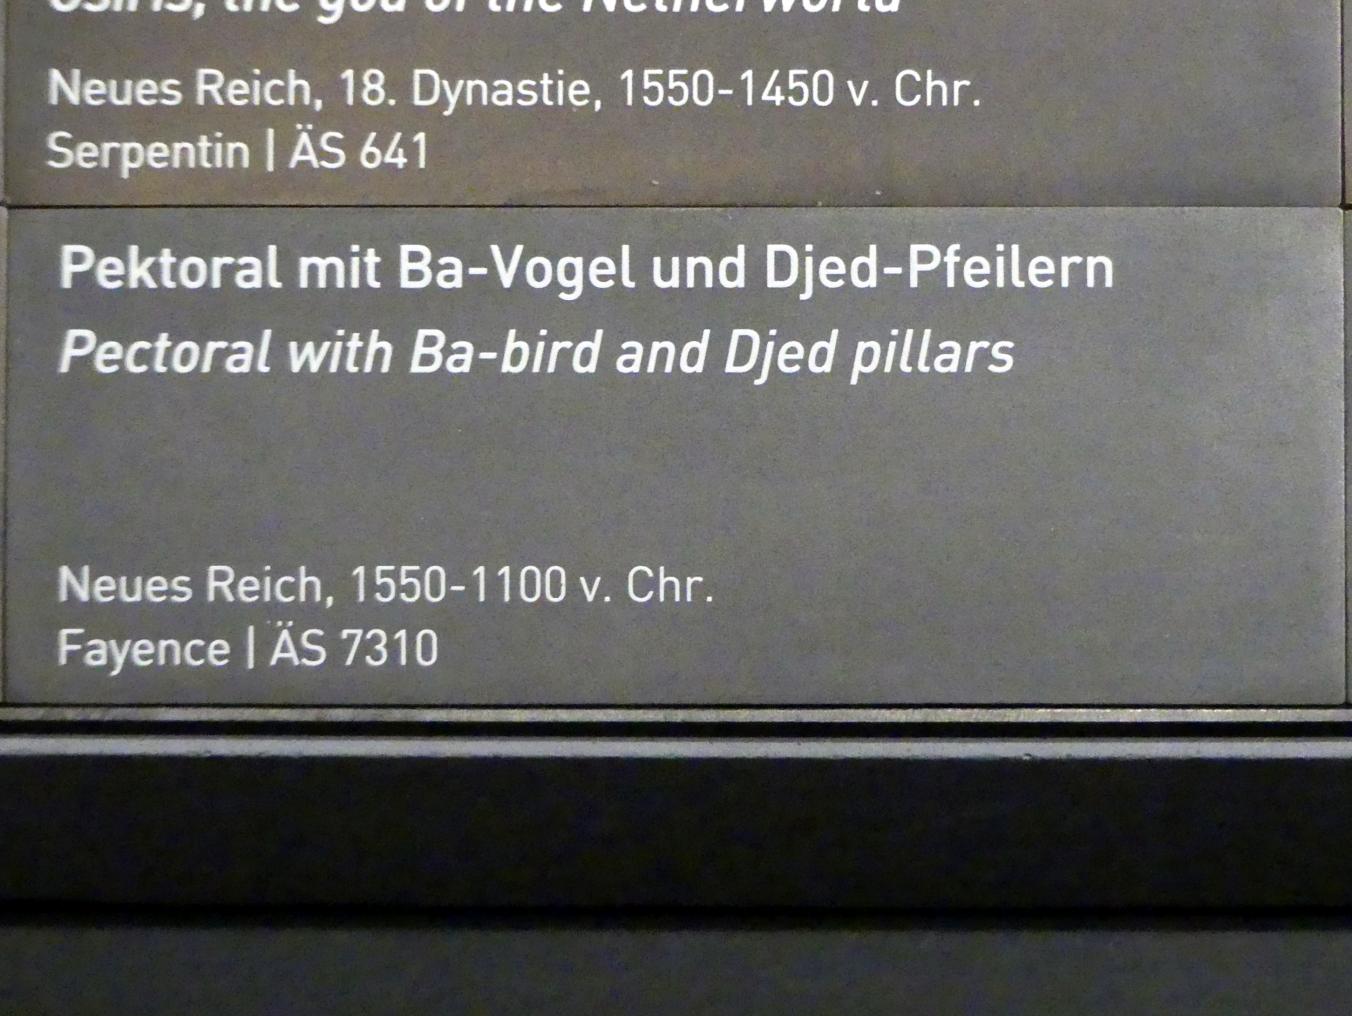 Pektoral mit Ba-Vogel und Djed-Pfeilern, Neues Reich, 953 - 887 v. Chr., 1550 - 1100 v. Chr., Bild 2/2